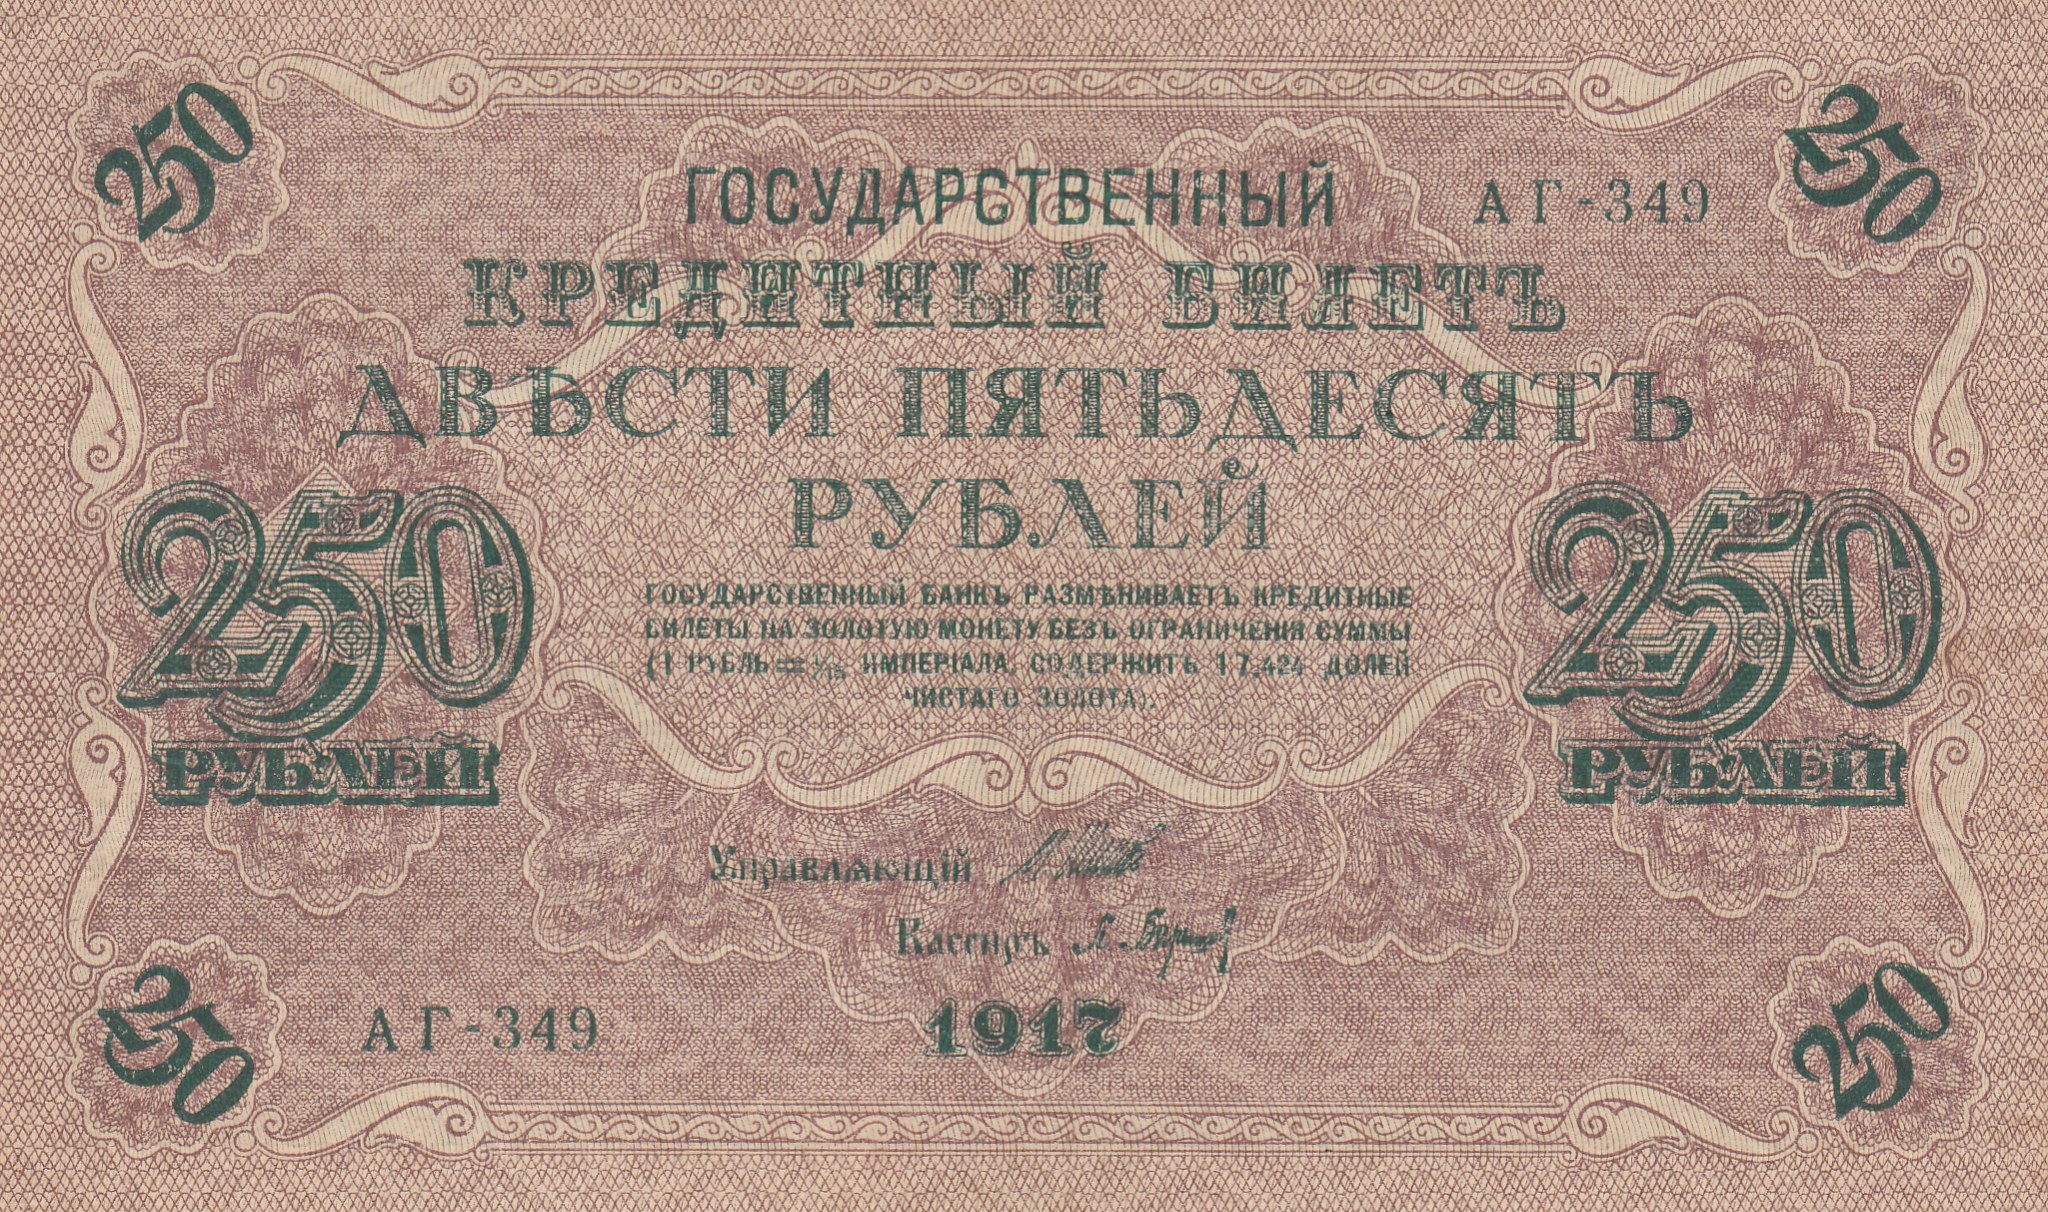 Двести пятьдесят первого. 250 Рублей 1917 Овчинников. Государственный кредитный билет 250 рублей 1917. Купюра бона 250 рублей 1917.